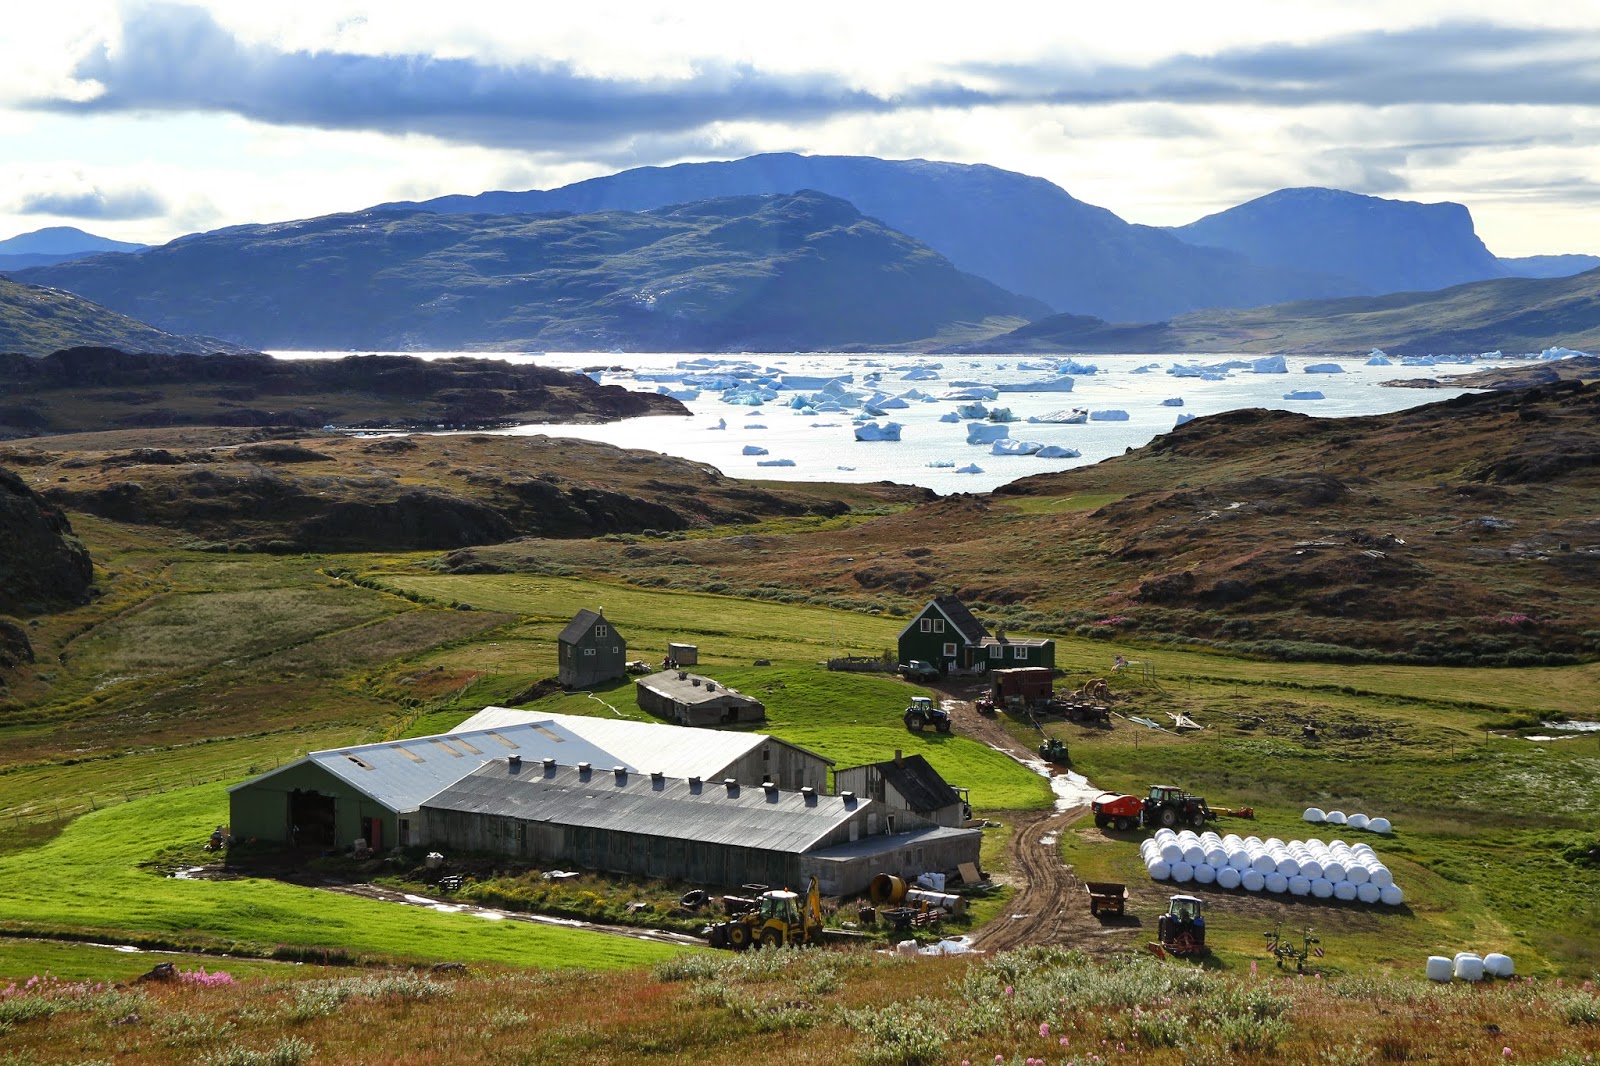 VISITAR A GRONELÂNDIA | Lugares e experiências incríveis na Gronelândia (Groenlândia)